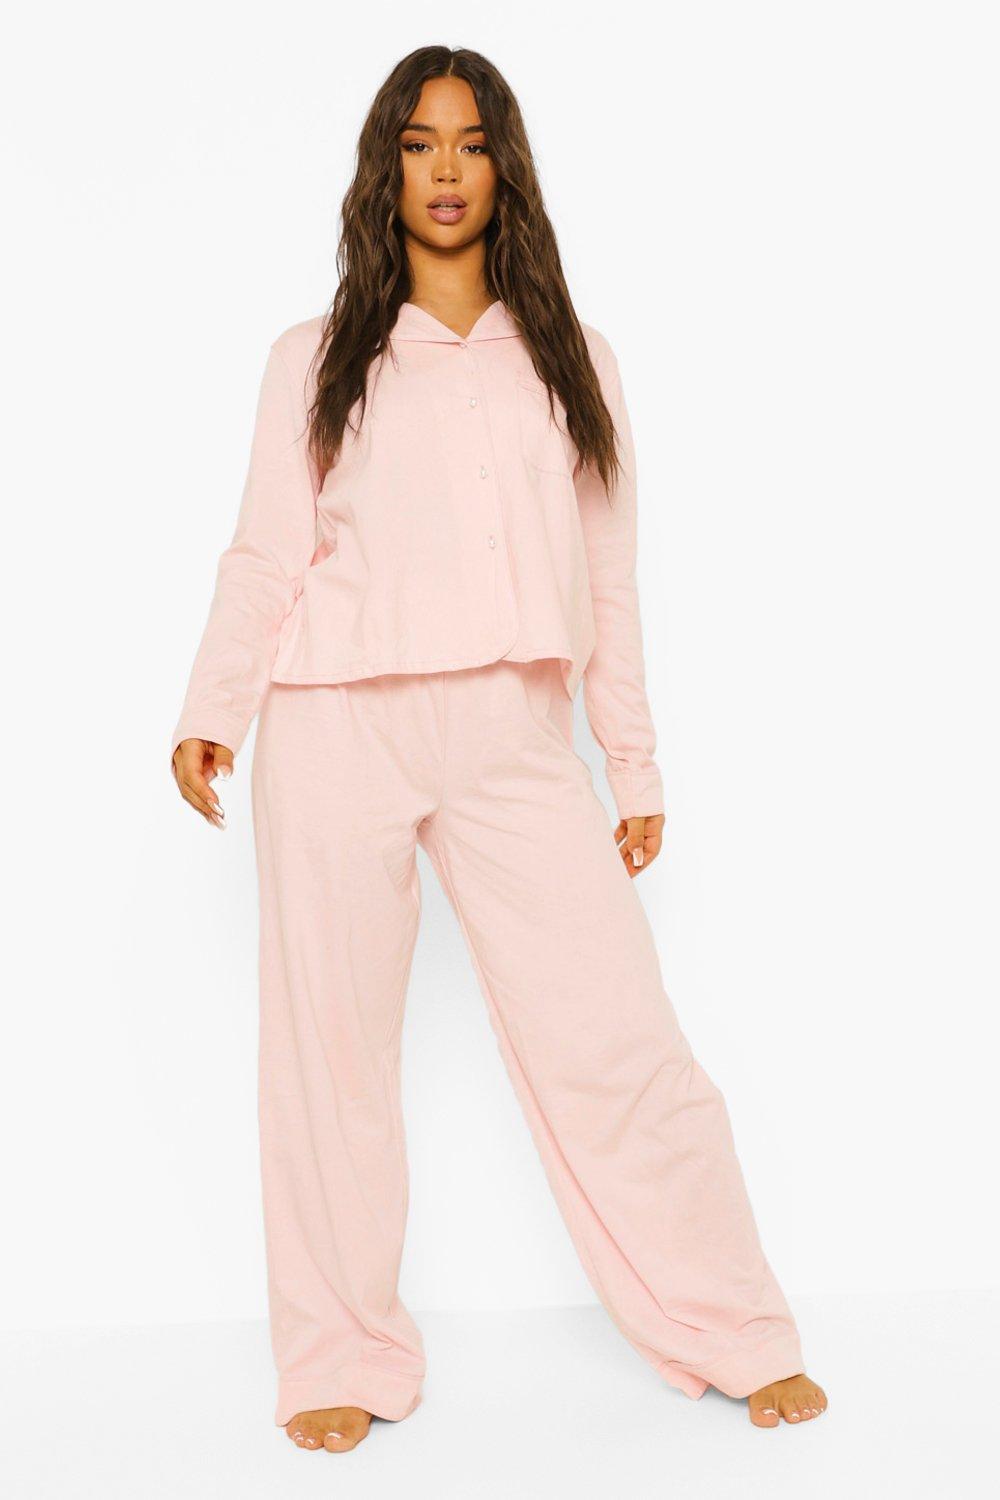 Jersey Button Pajamas Ladies Pink Blush Floral Long Sleeve Pajama Set